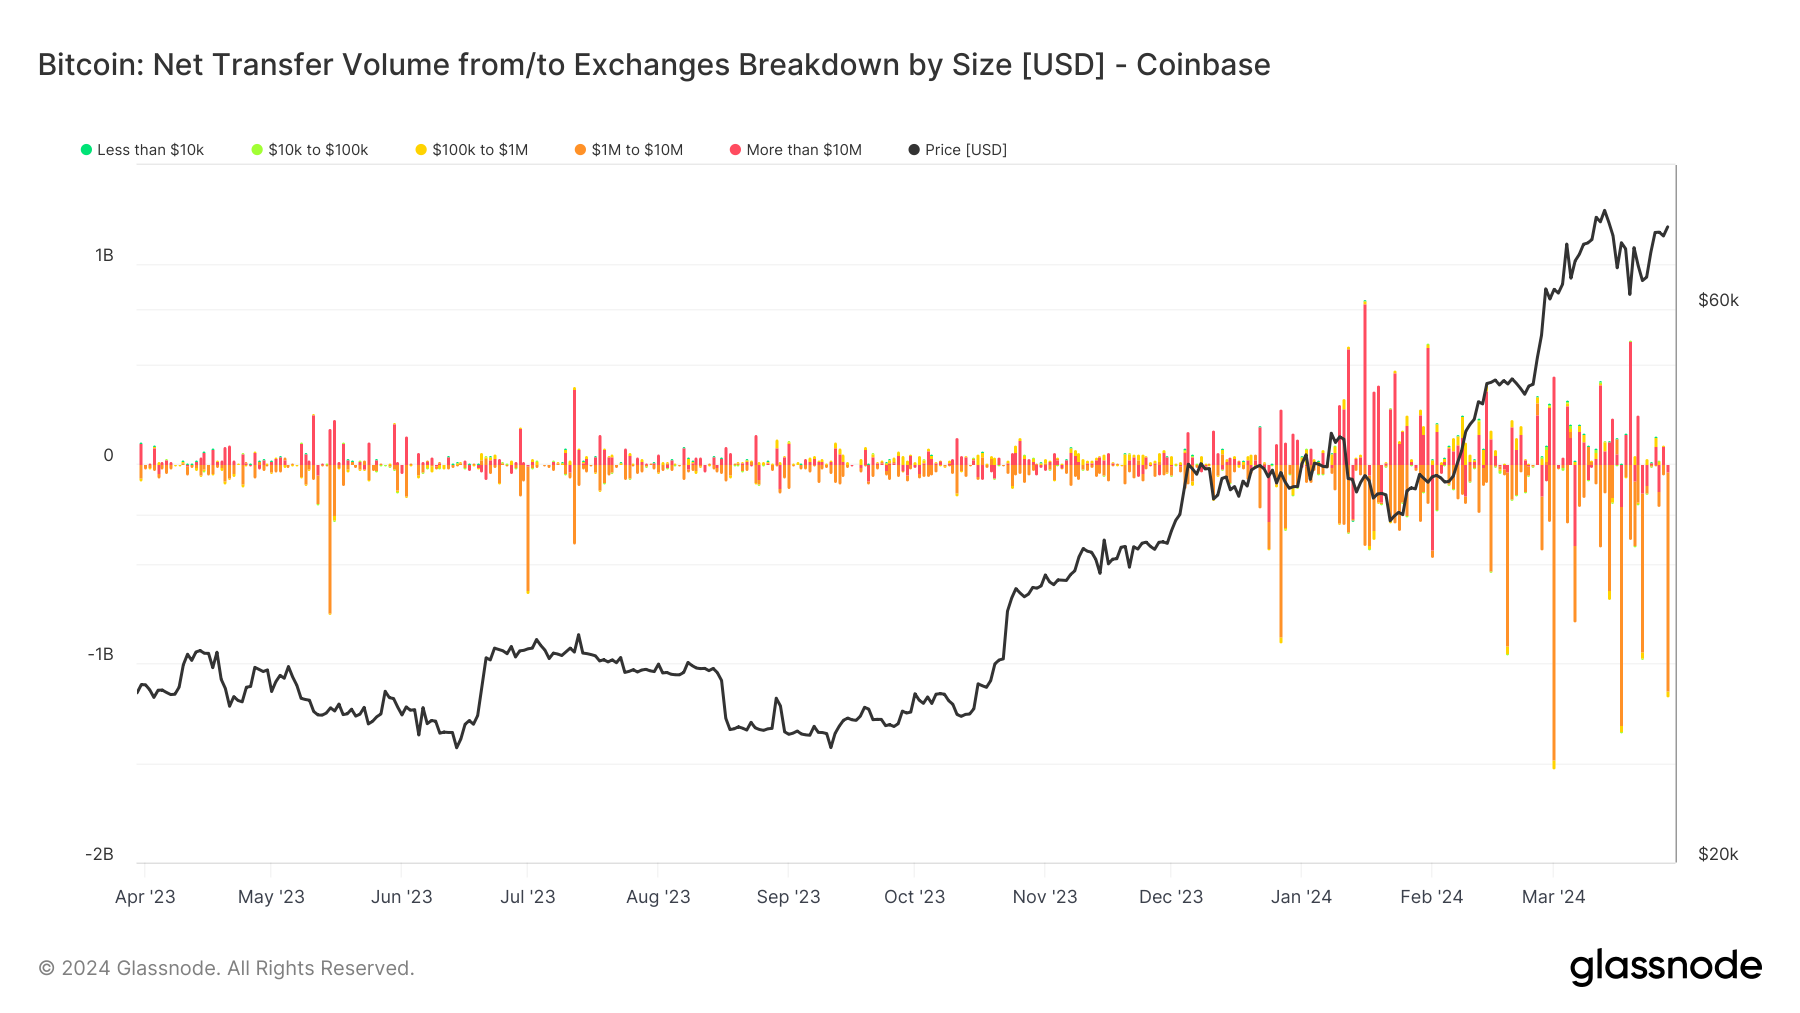 Coinbase odnotowuje trzecią co do wielkości wypłatę Bitcoinów w ciągu roku, z transferem 1.1 miliarda dolarów w ciągu jednego dnia